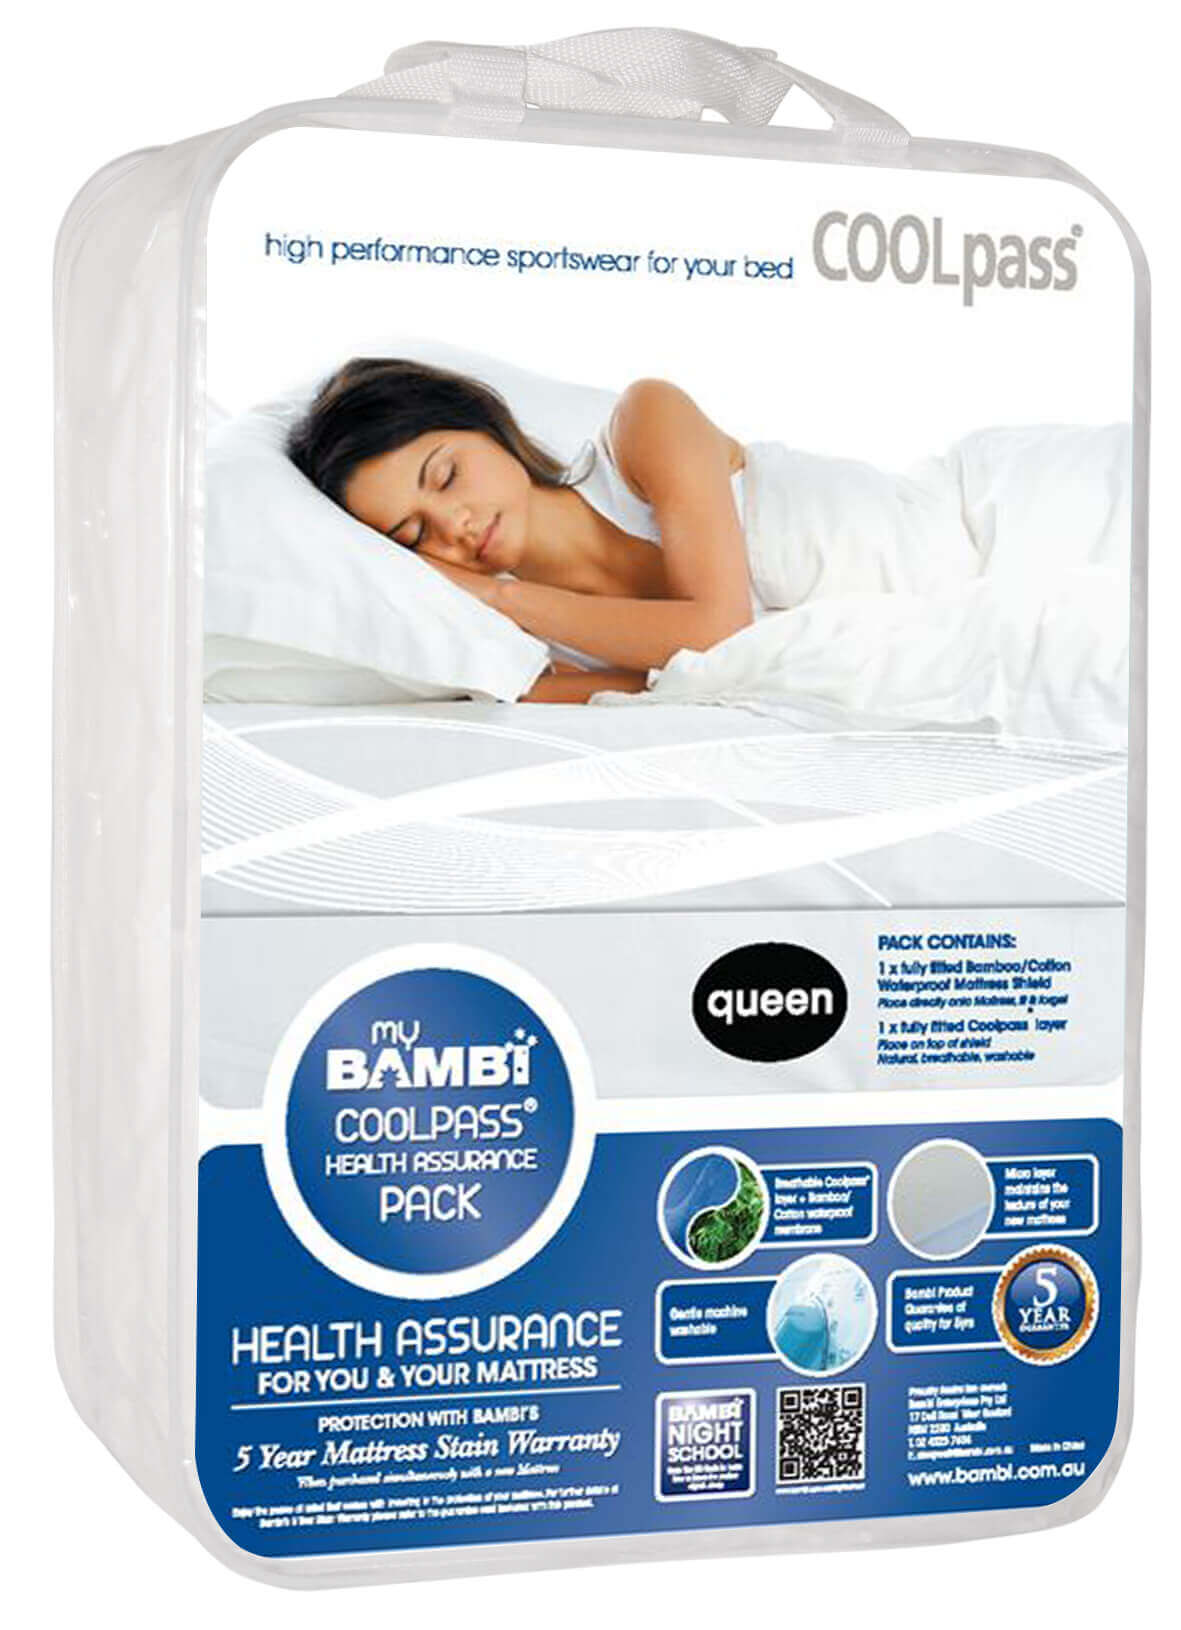 Coolpass Health Assurance Mattress Protector Pack